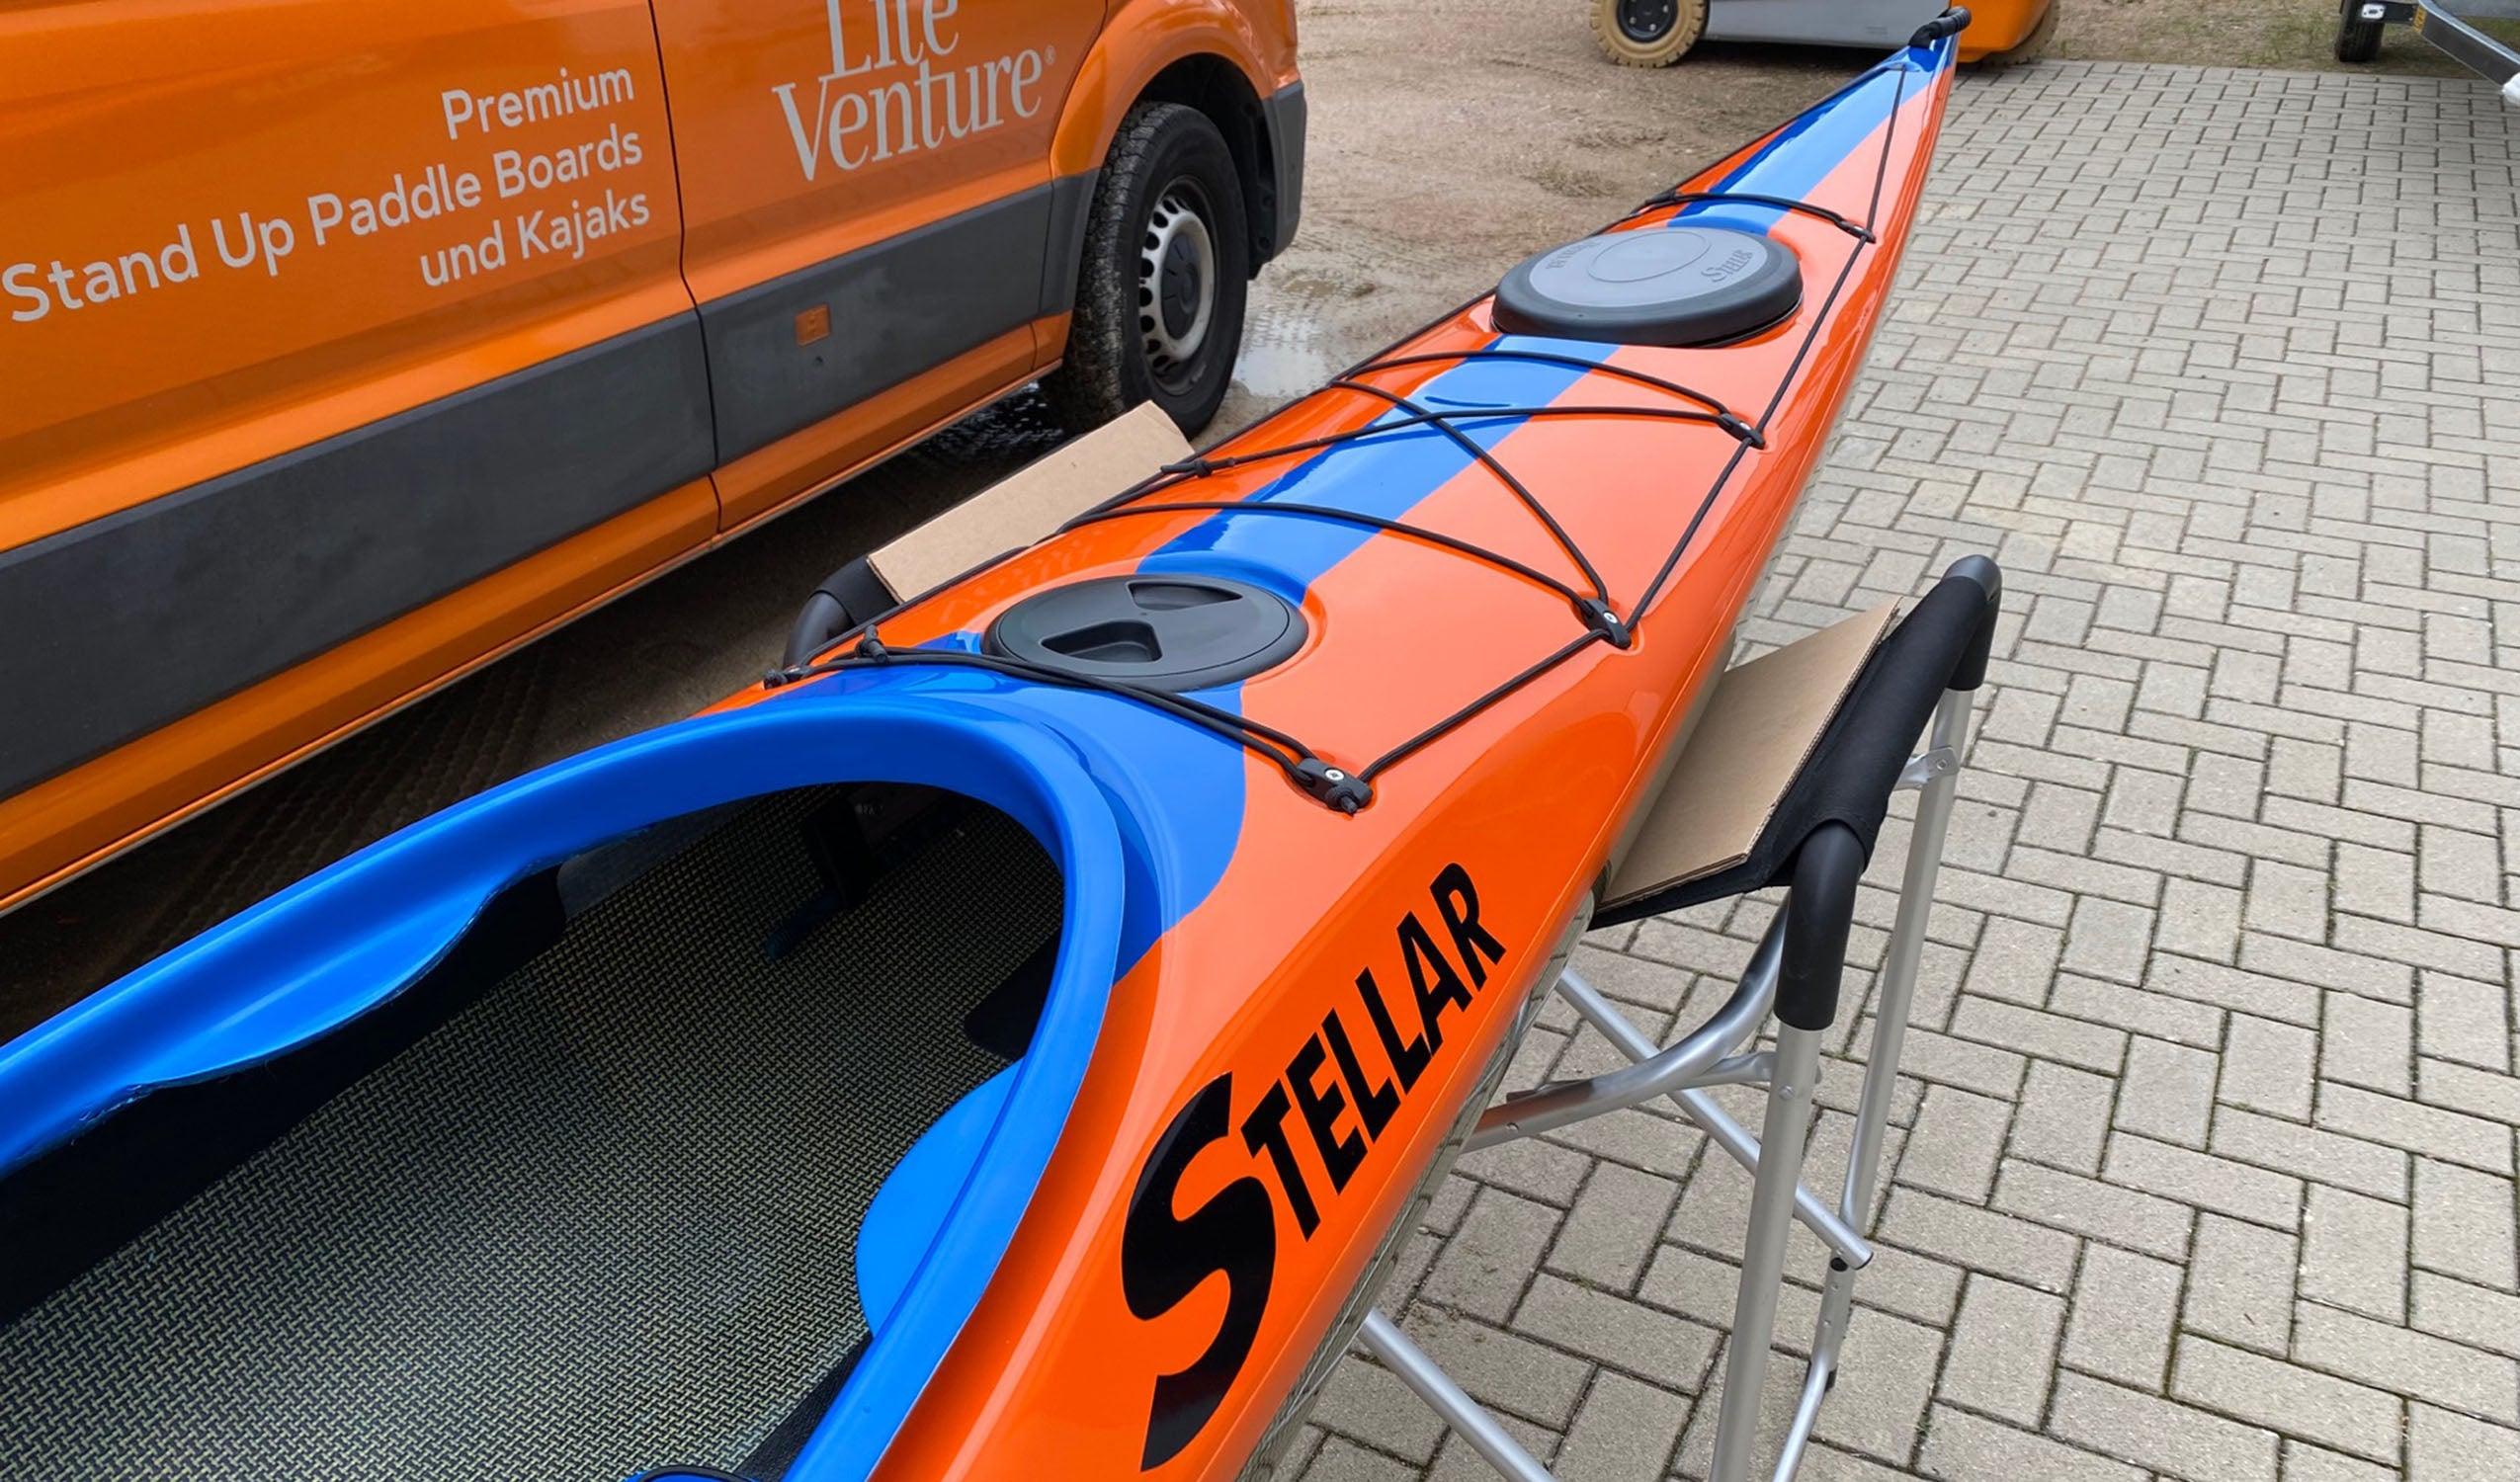 Produktbild von Kajak " S18 Expedition Multisport-orange blau " der Marke STELLAR Lightweight für 3490.00 €. Erhältlich online bei Lite Venture ( www.liteventure.de )